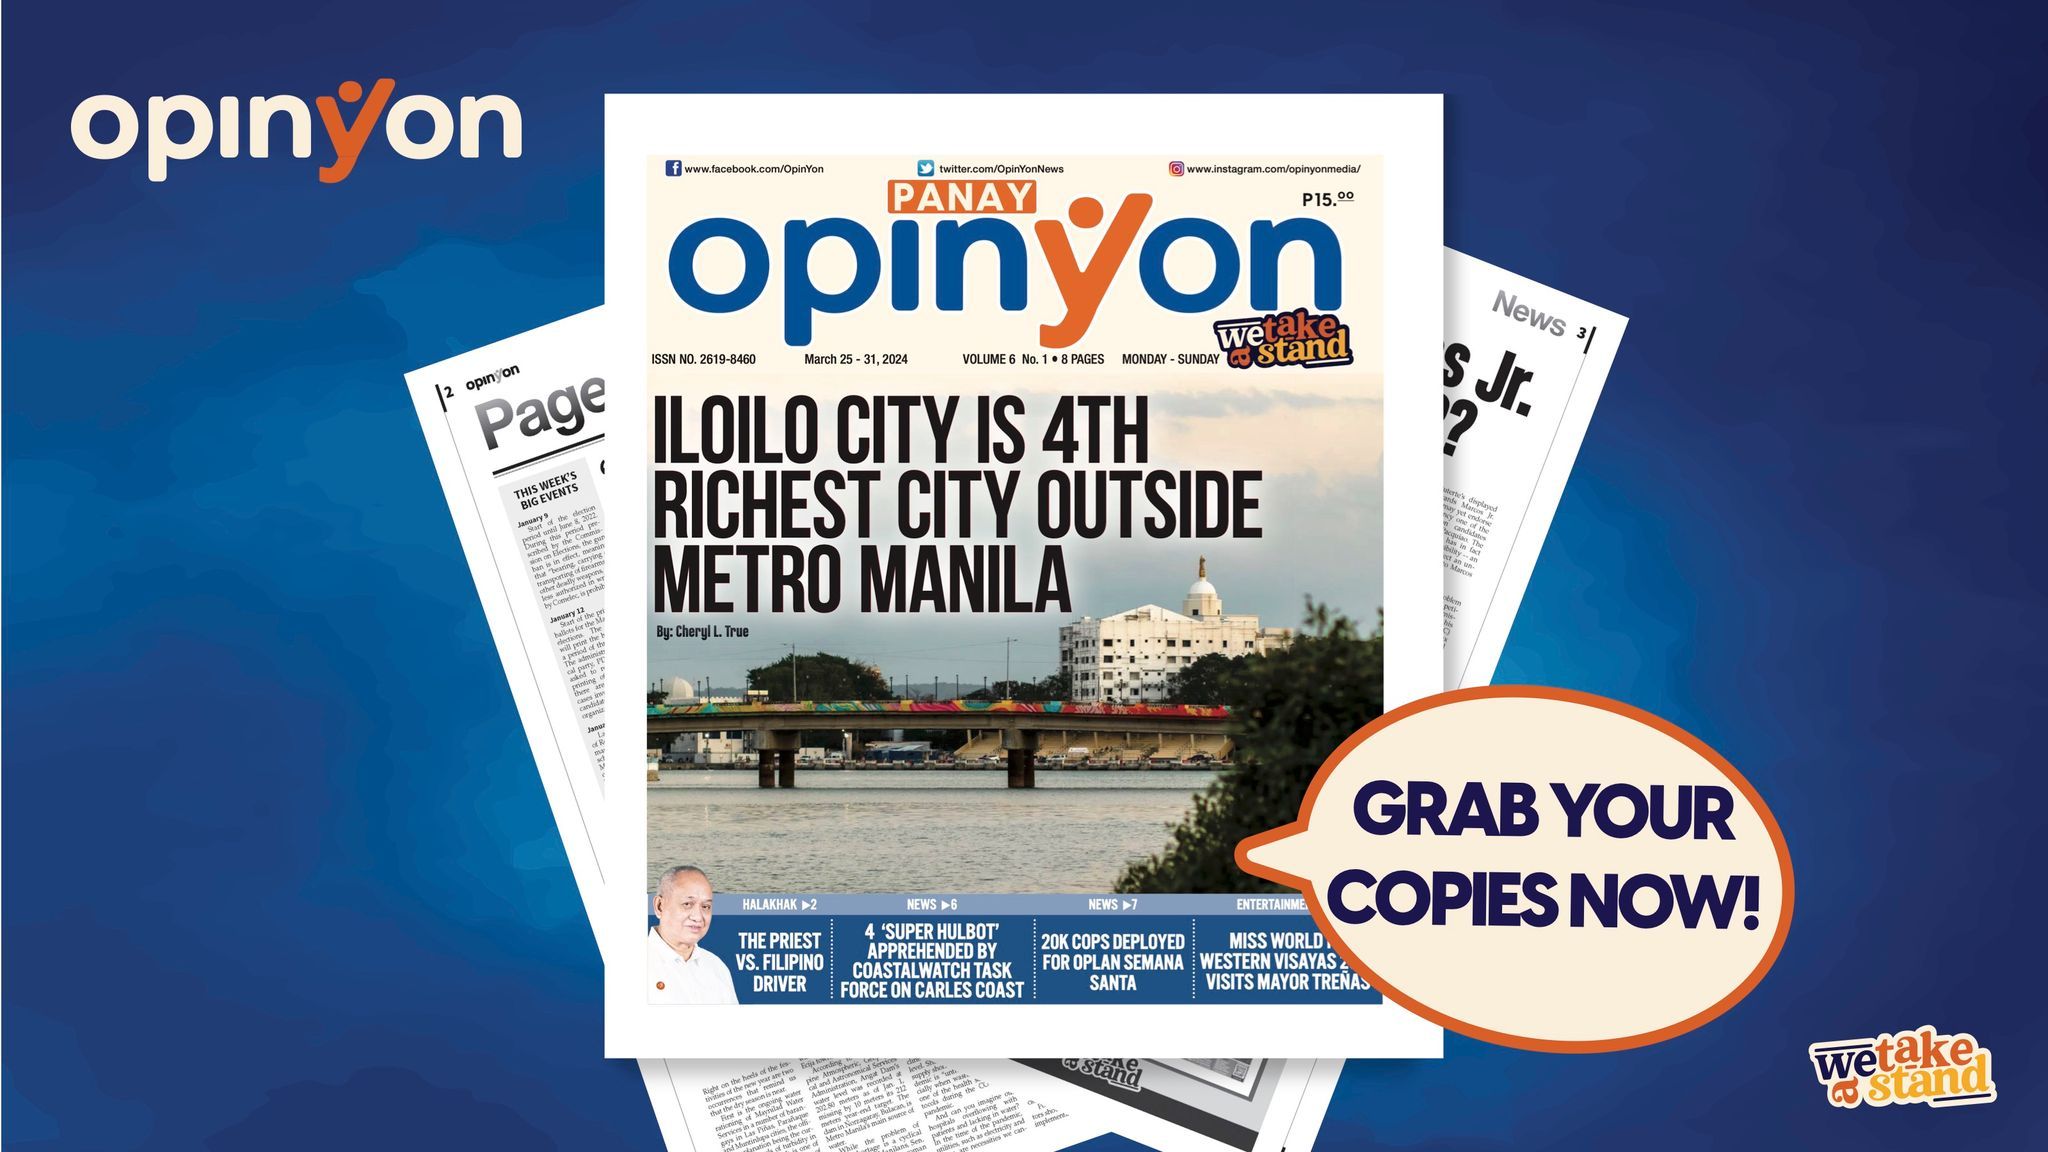 Iloilo City is 4th richest city outside Metro Manila